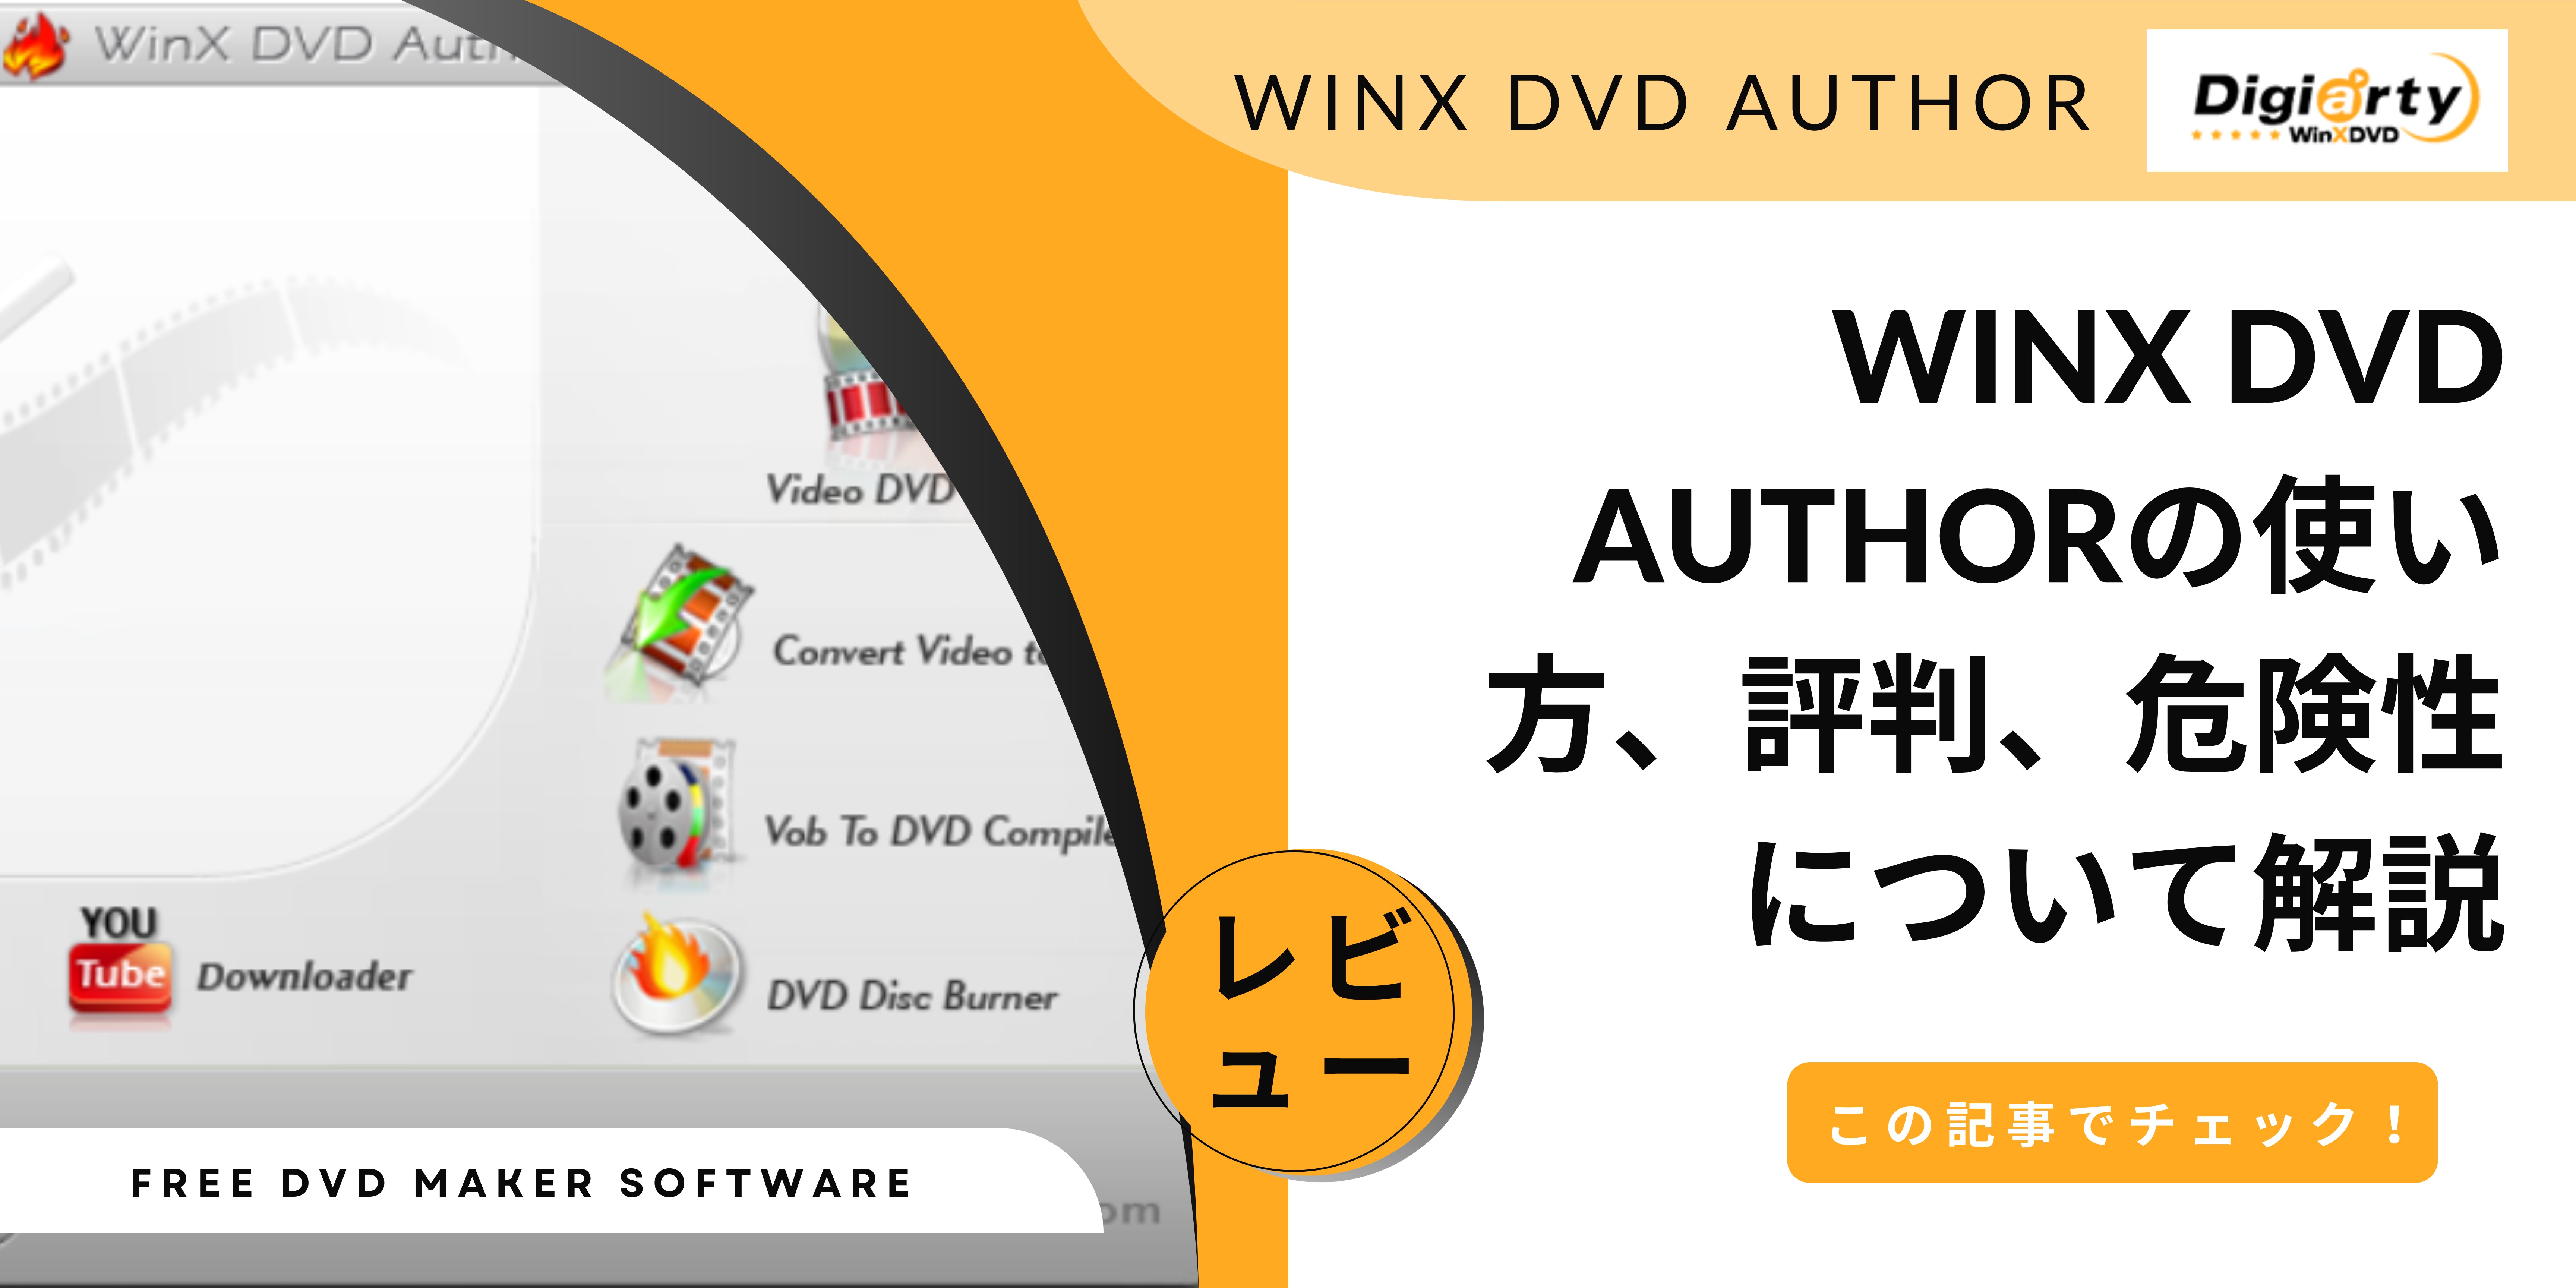 【レビュー】WinX DVD Authorの使い方、評判、危険性について解説